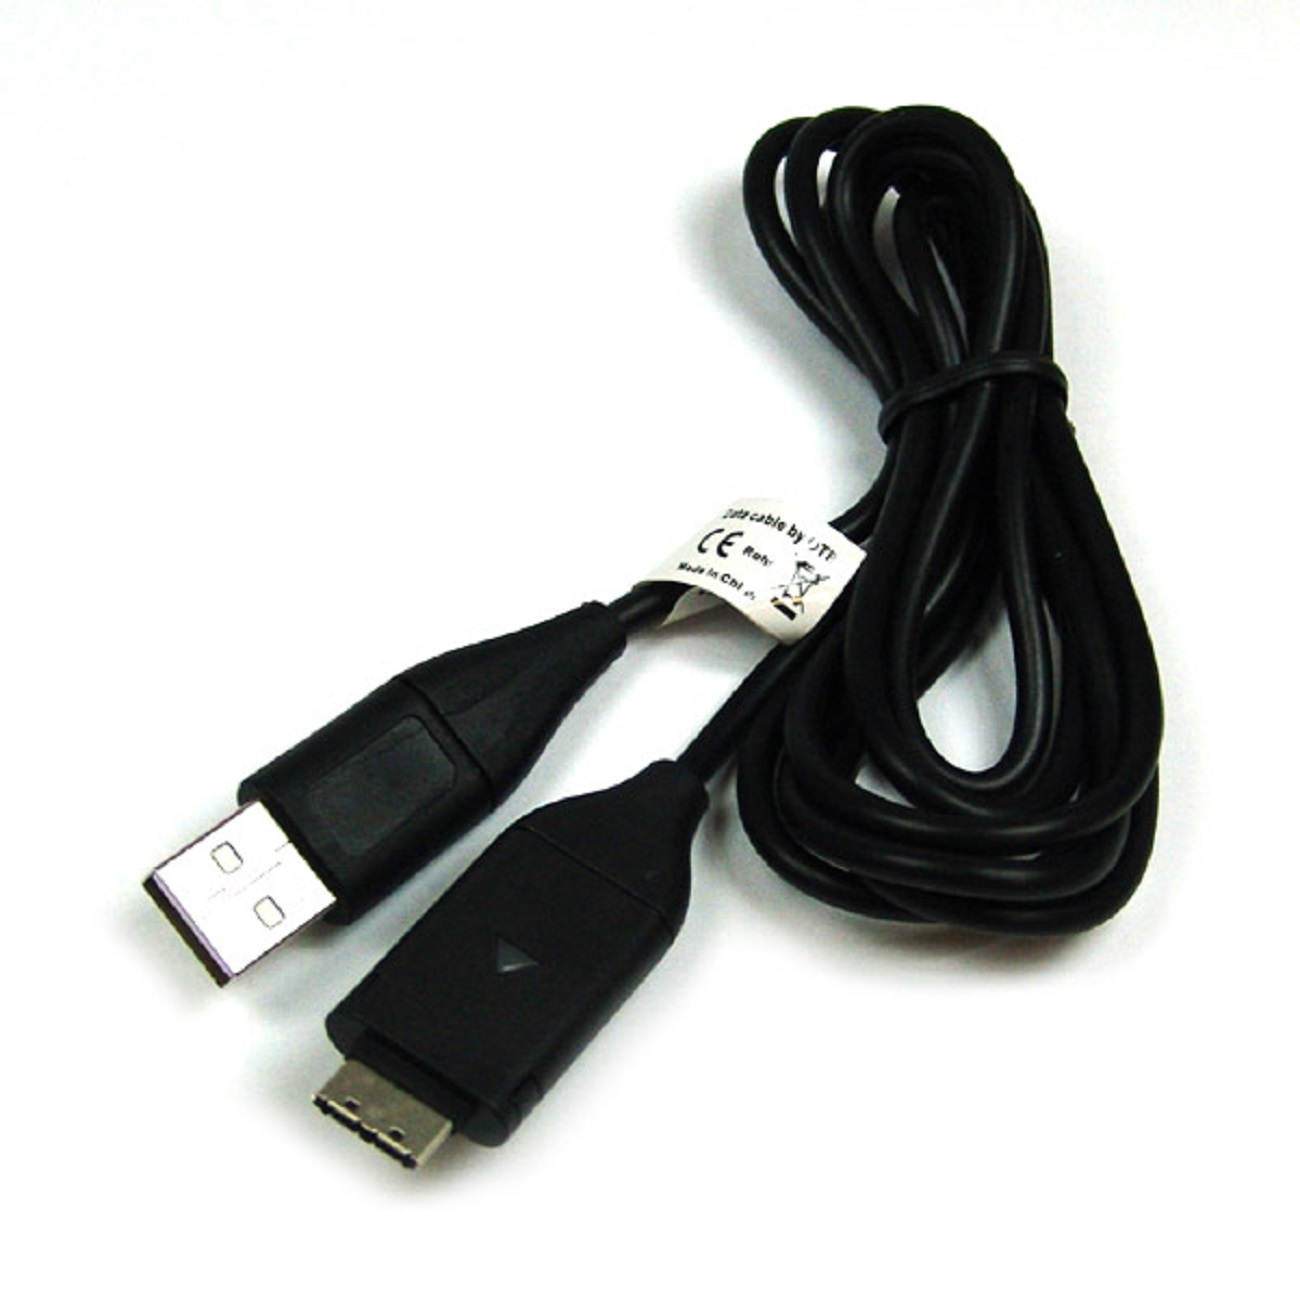 MOBILOTEC USB-Ladekabel kompatibel mit Samsung, schwarz Zubehör Samsung WB210